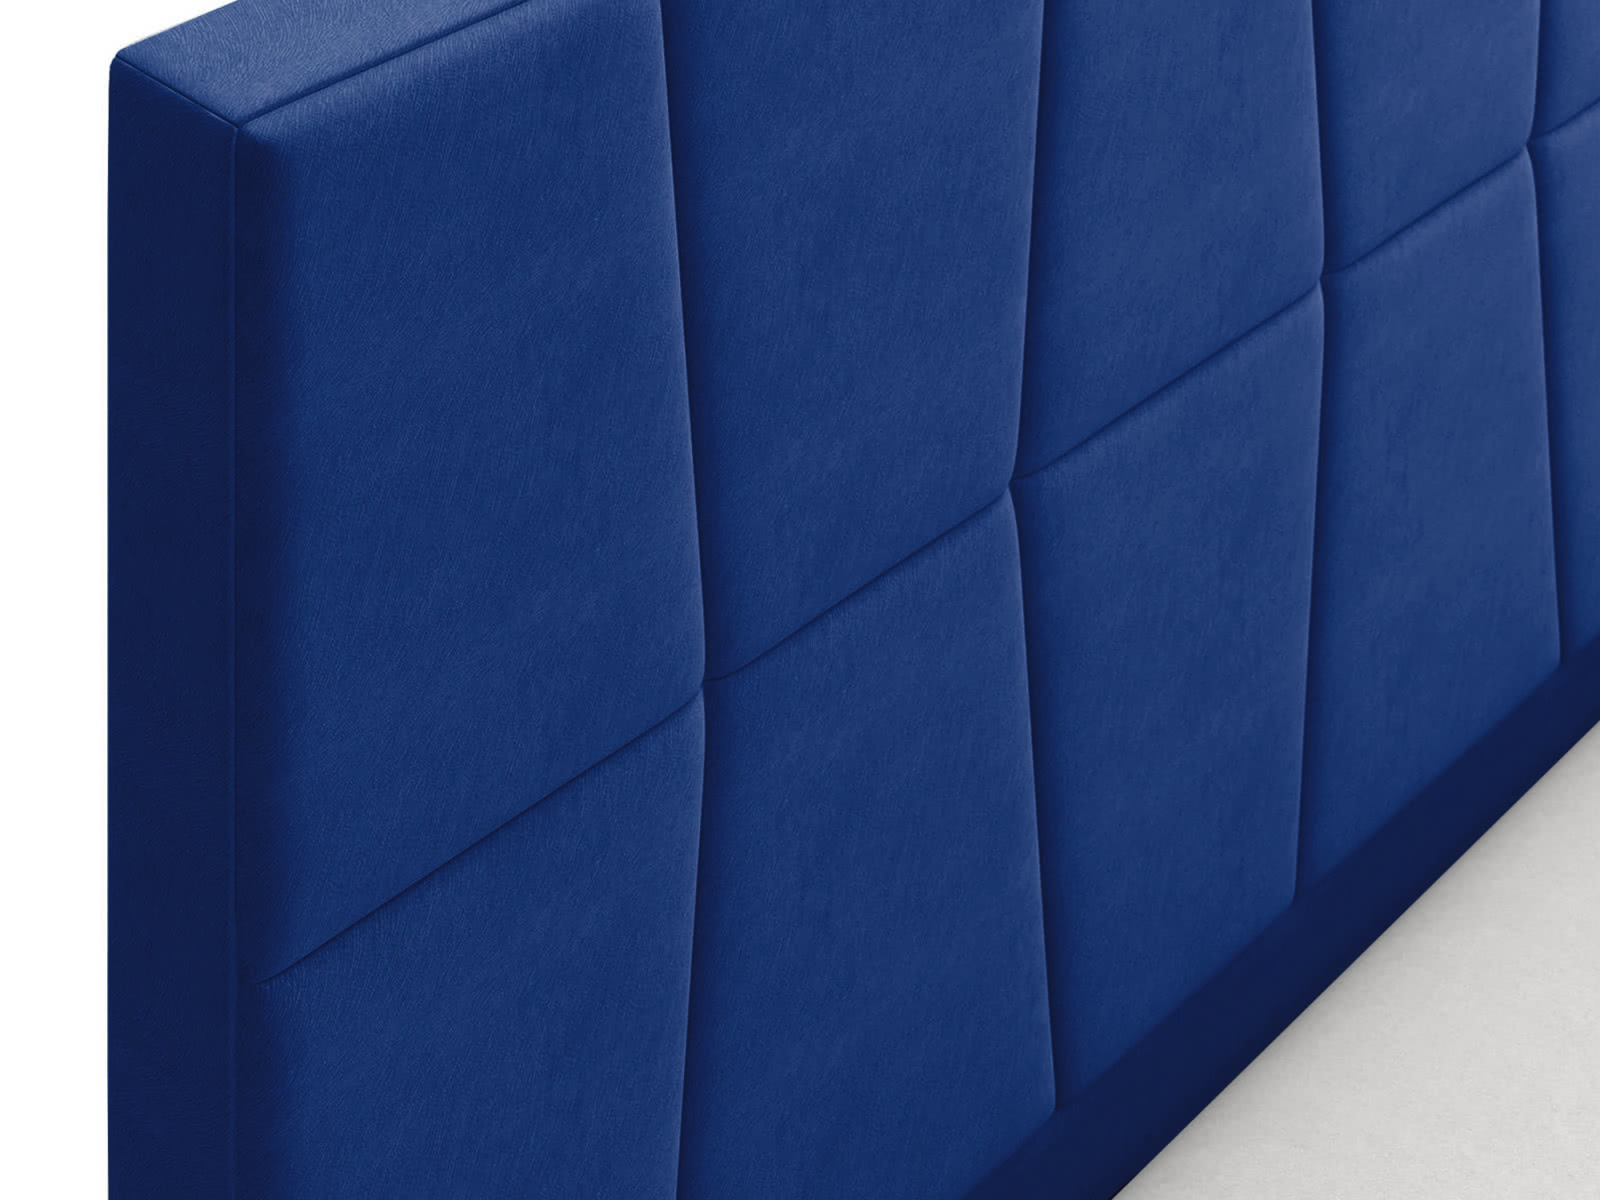 Кровать СтолЛайн Пассаж 160x200 с подъемным механизмом цена — лучшие модели в каталоге